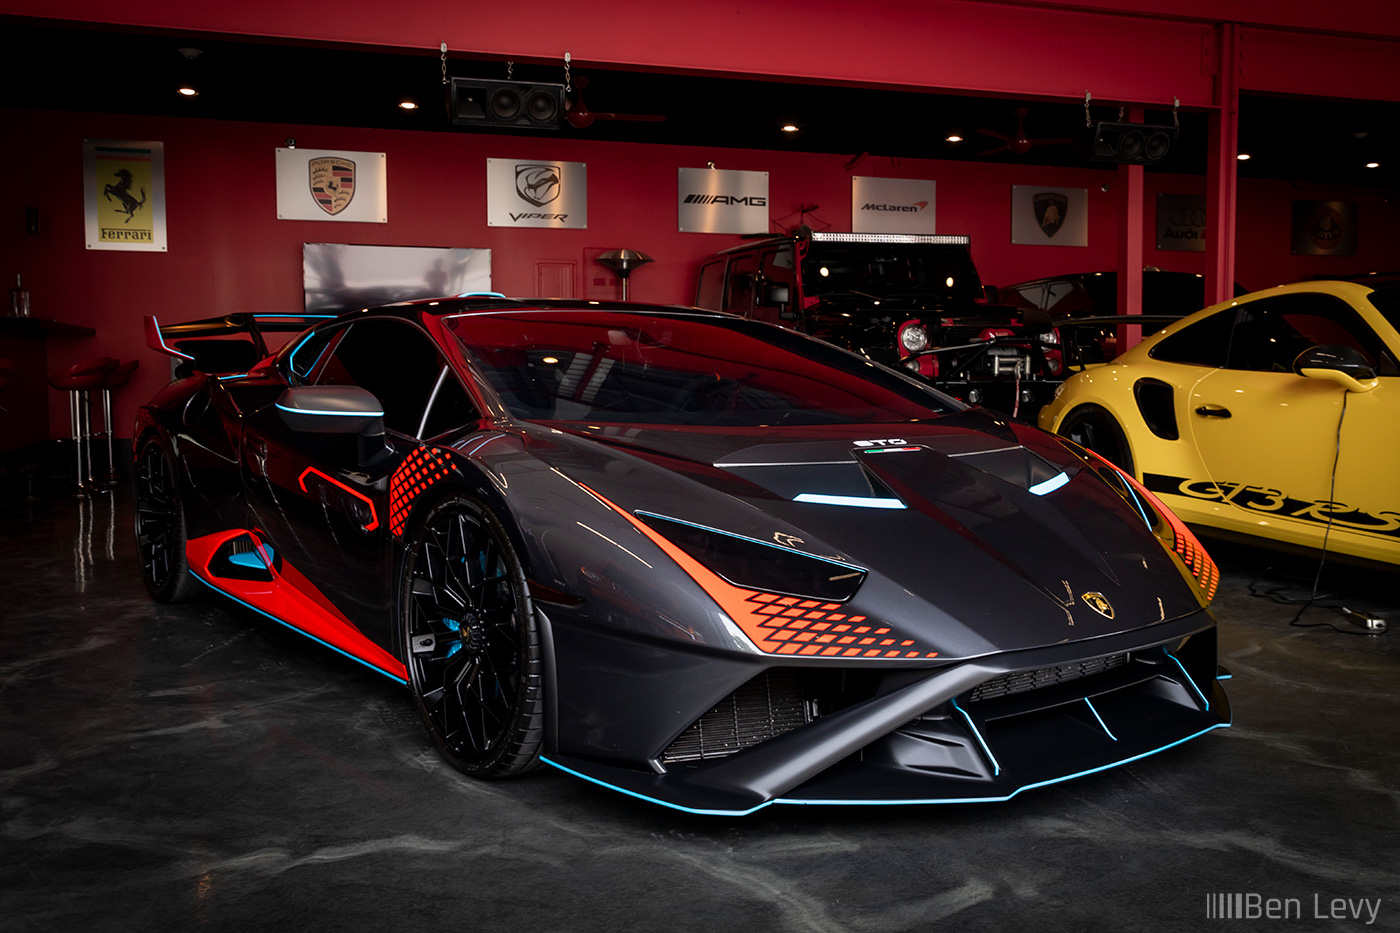 Grey Lamborghini Huracan STO in Plush Garage